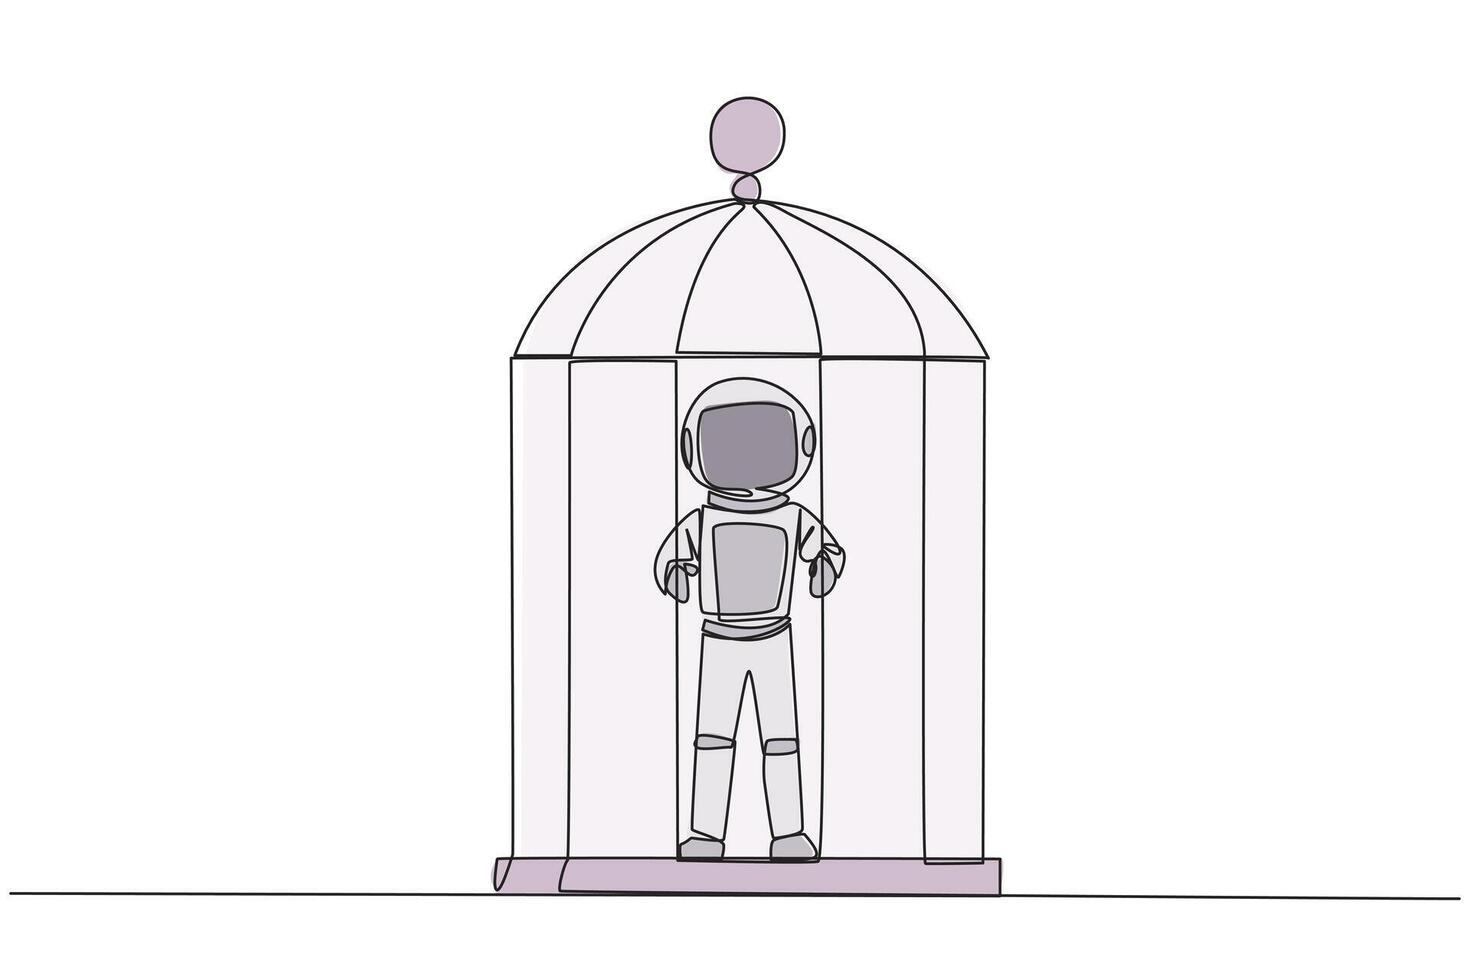 doorlopend een lijn tekening ongelukkig astronaut gevangen in kooi staand houden de ijzer bars. opgesloten lichaam en verstand. beperkt kans. gevoel uitgeput. single lijn trek ontwerp illustratie vector